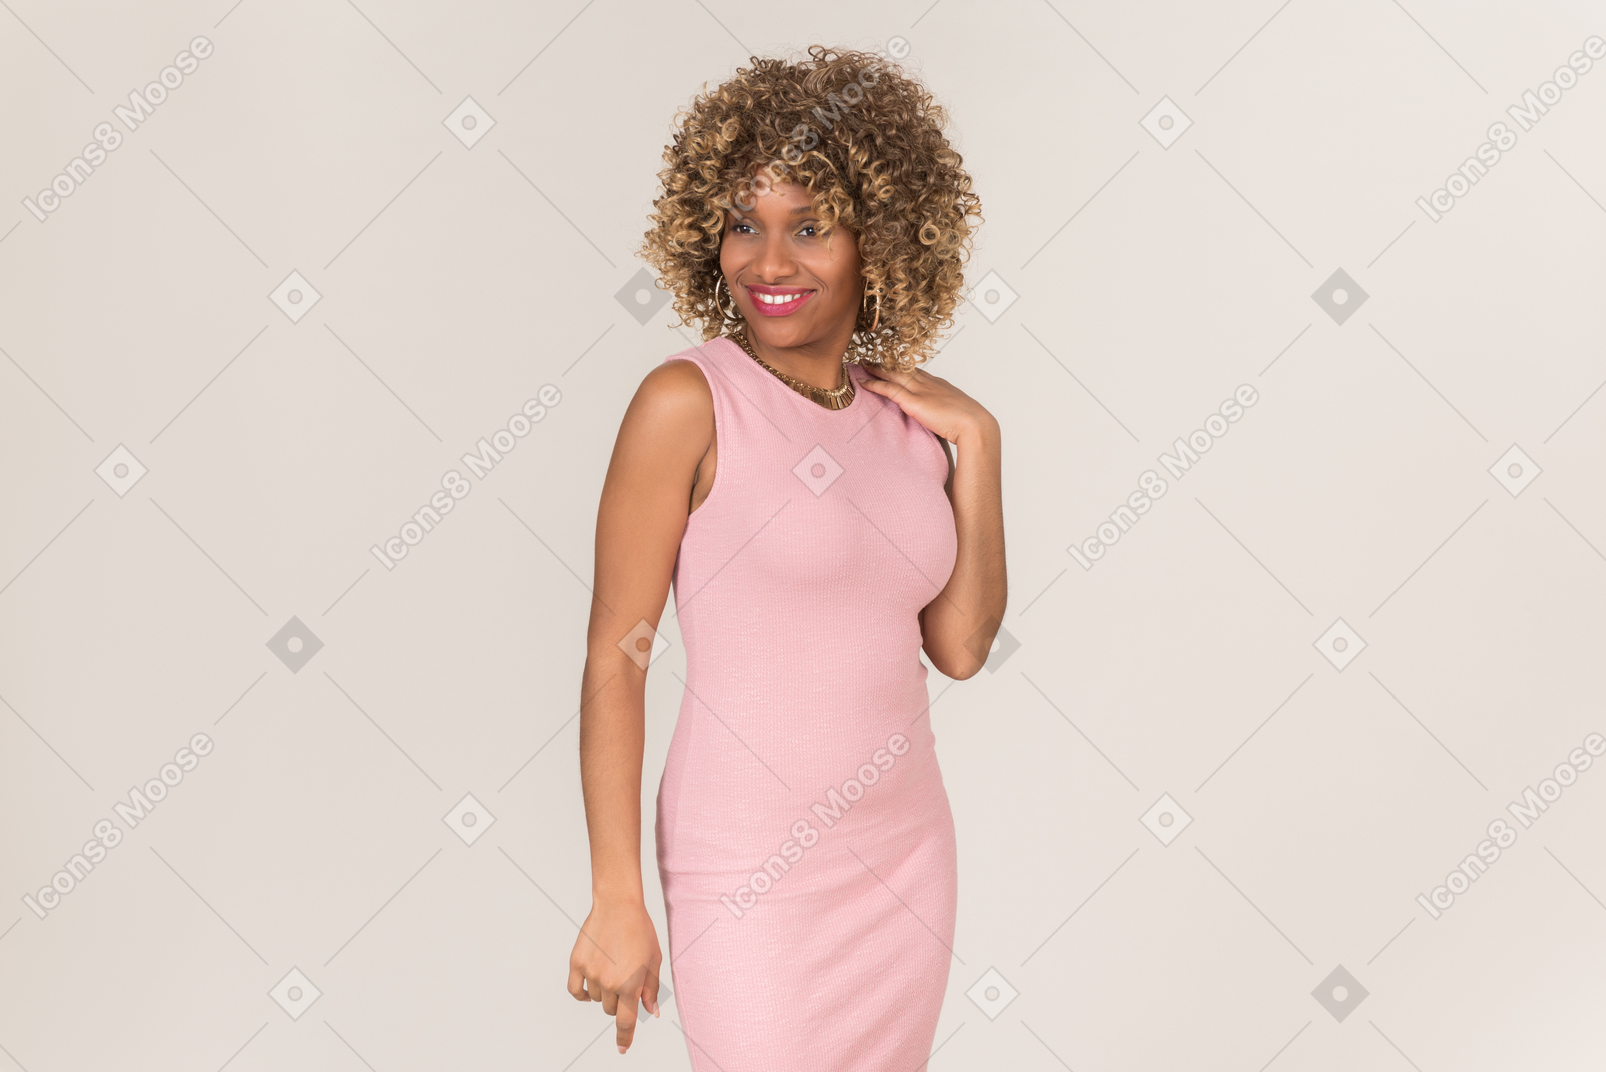 ピンクのドレスを着て立ち、微笑む女性